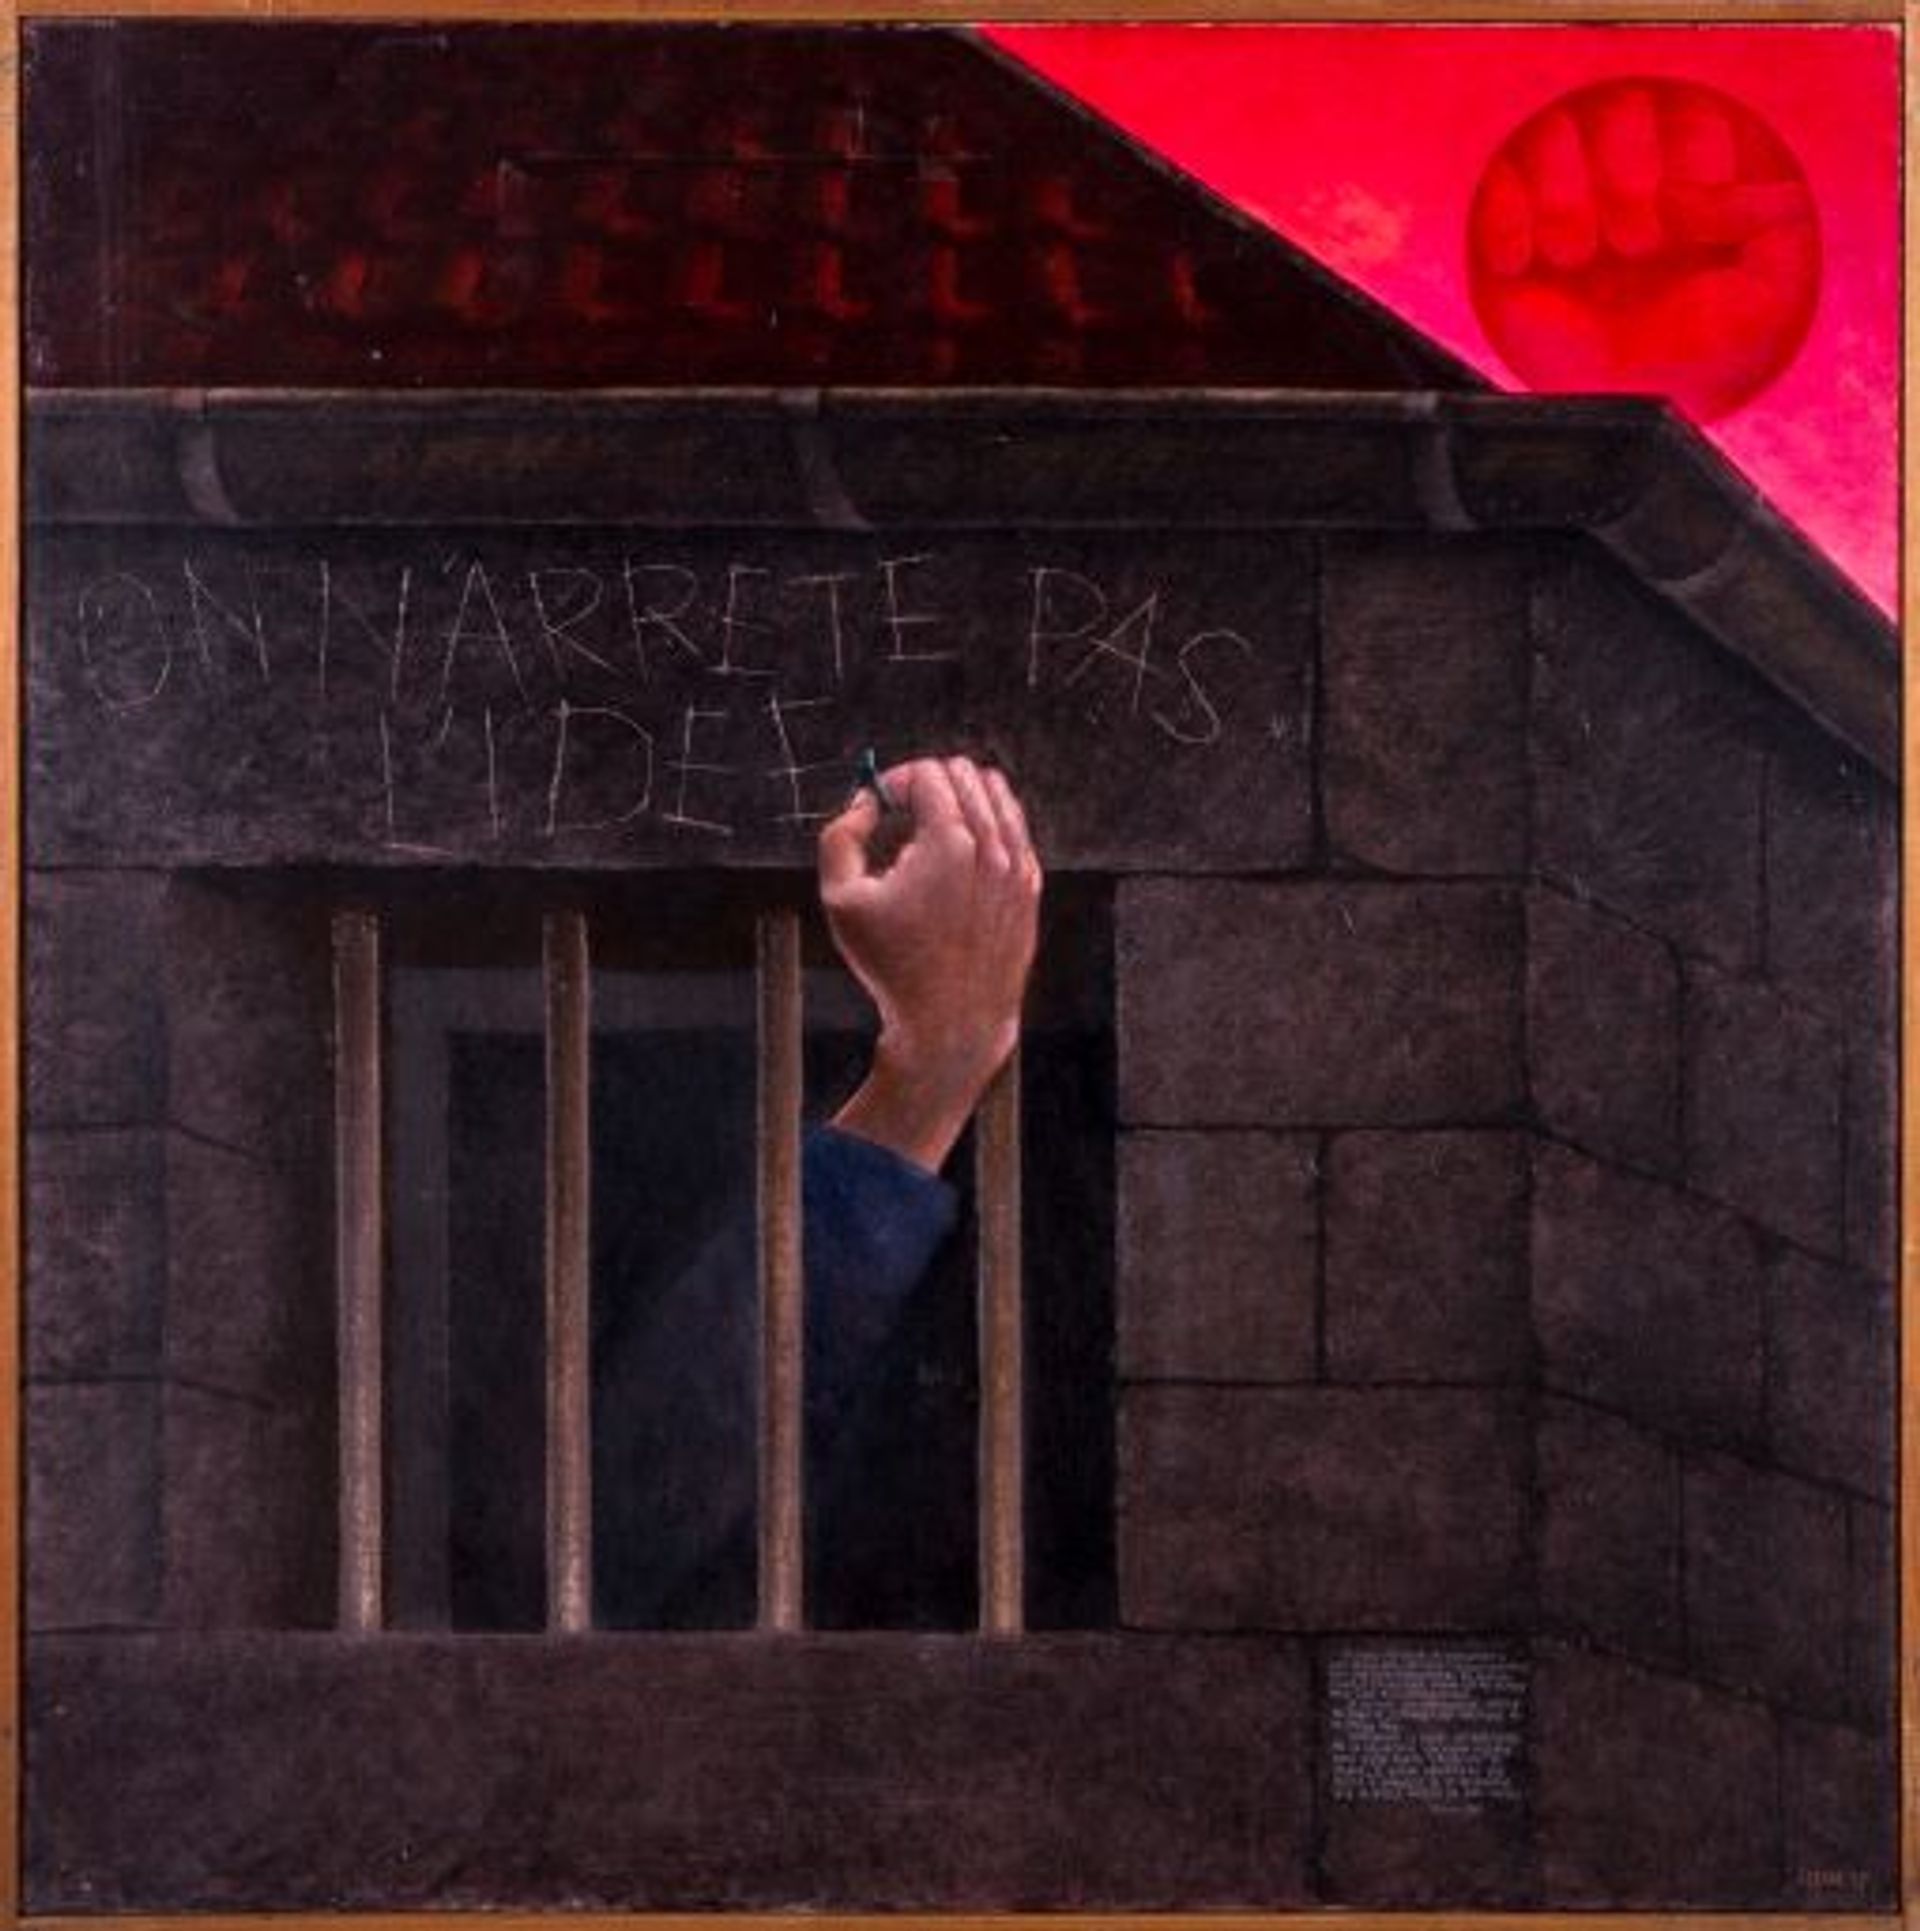 Robert Forgas, On n’arrête pas l’idée, 1972, huile sur toile, Museo de la Solidaridad Salvador Allende, Santiago du Chili. Courtesy Blaise Forgas